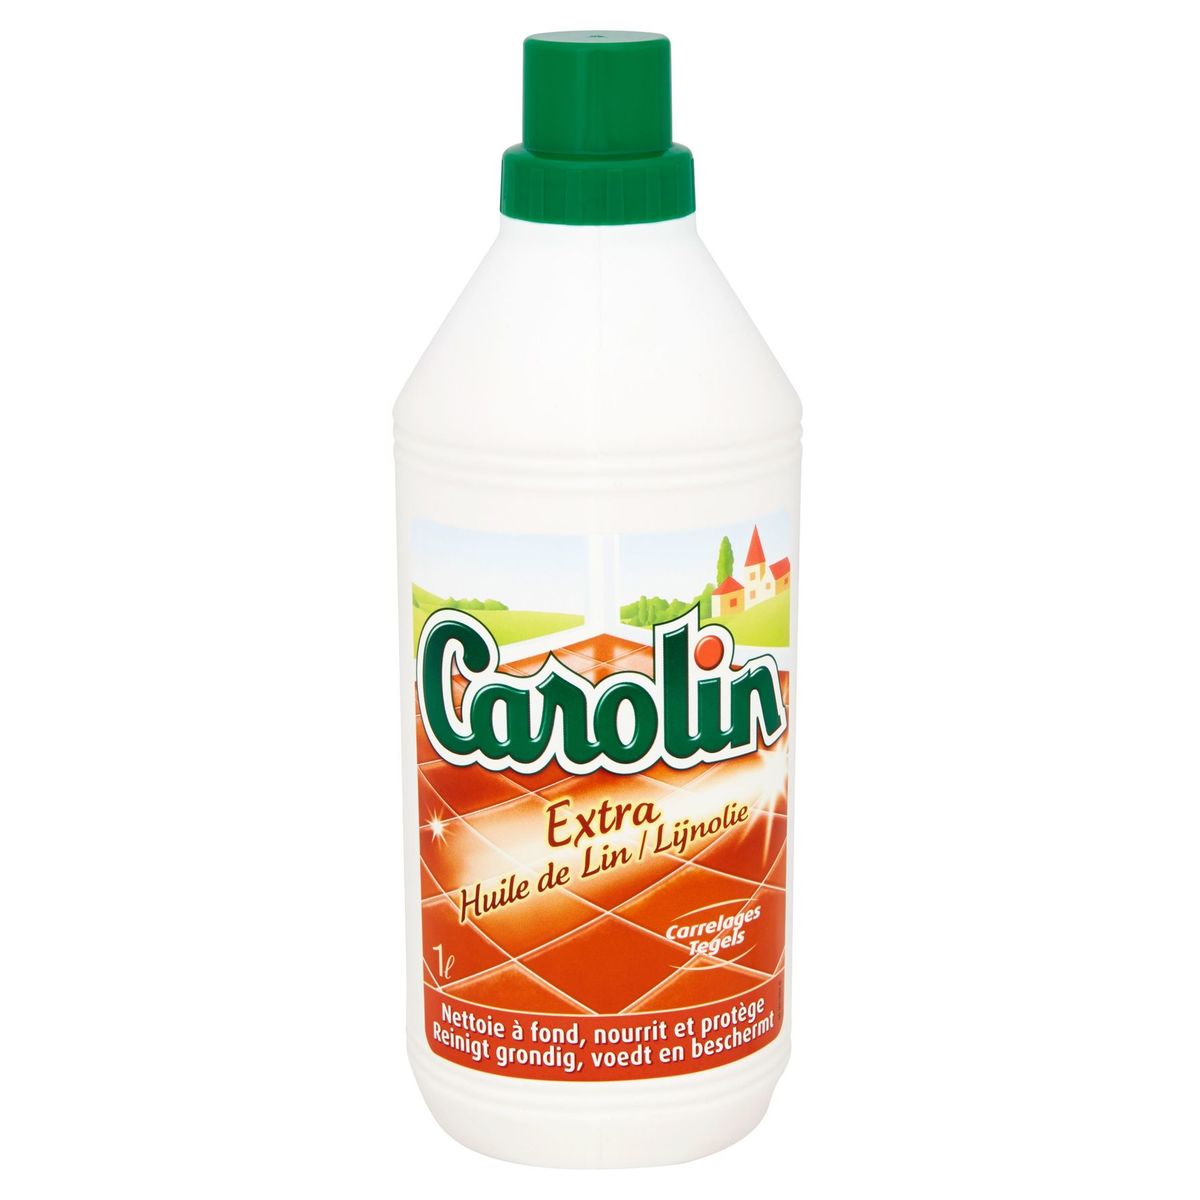 Carolin Extra huile de lin carrelages 1 L